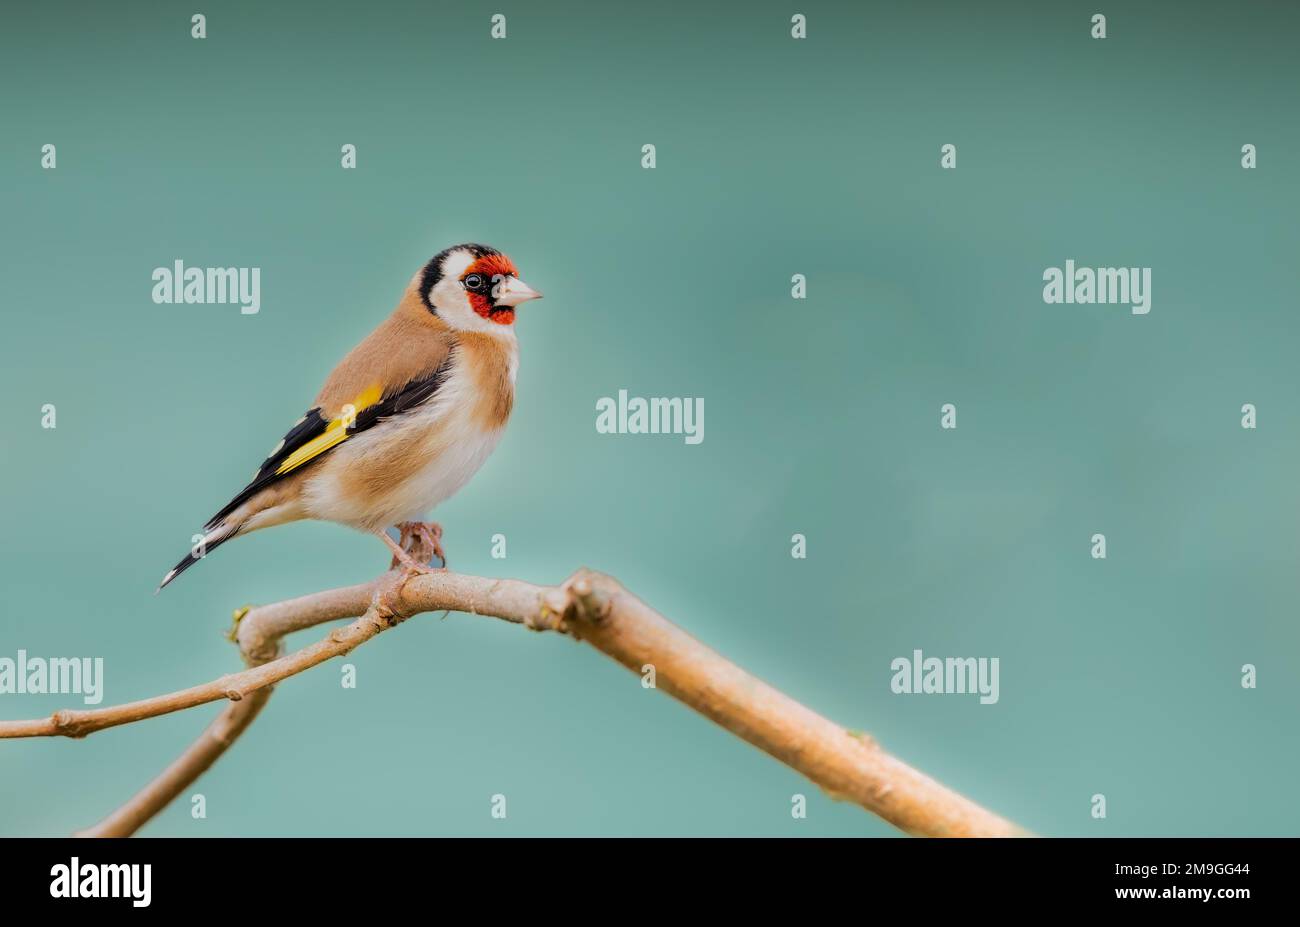 Nahaufnahme eines einzelnen Goldfinkens auf einem Ast mit einem sauberen, glatten Hintergrund. Speicherplatz kopieren Stockfoto